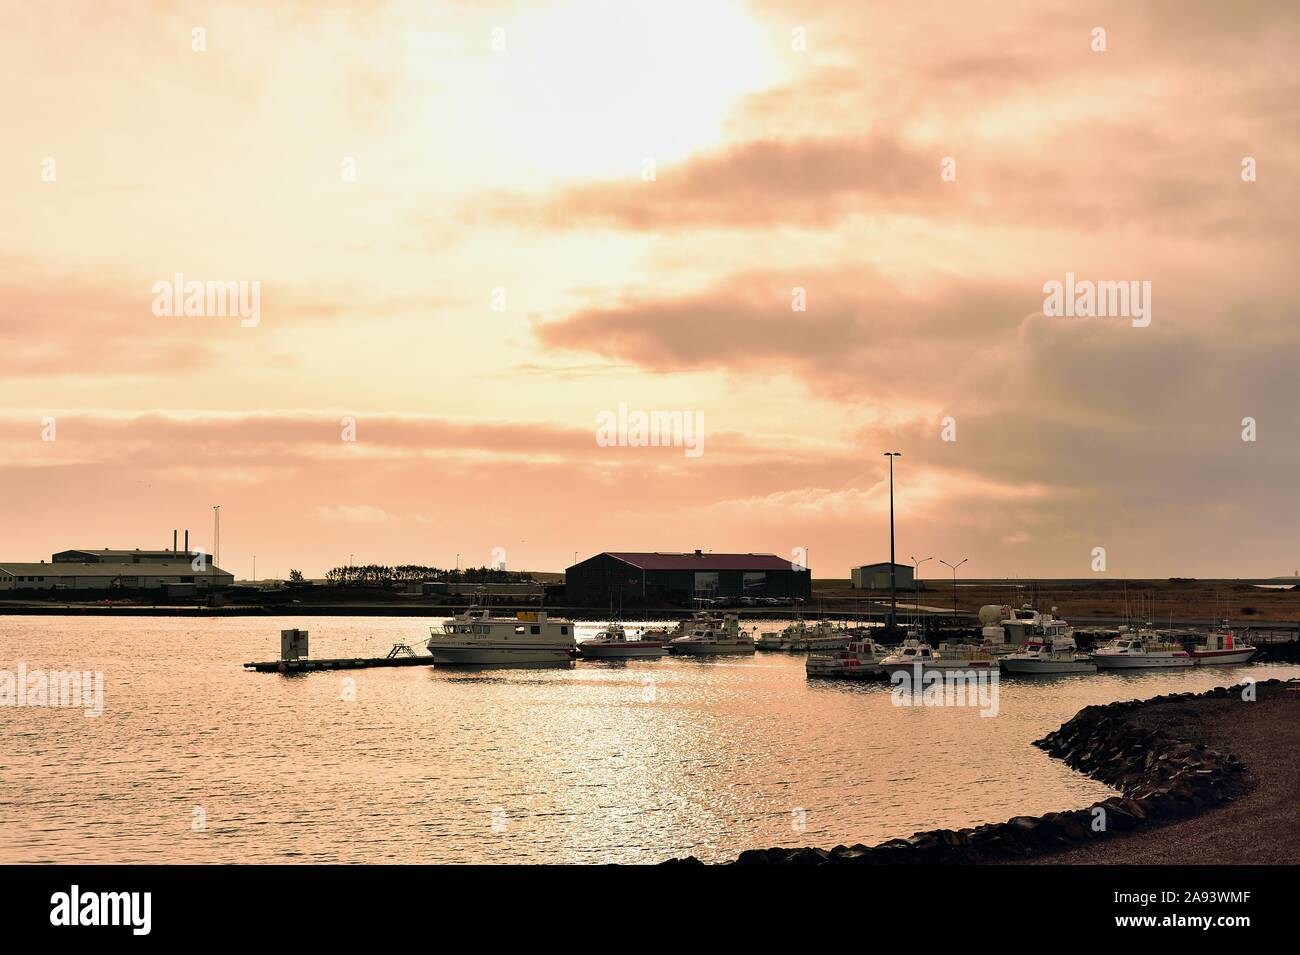 Hofn, Islande. Navires et bateaux amarrés à un quai dans le port de la communauté côtière de Hofn dans la lueur du petit matin peu après le lever du soleil. T Banque D'Images